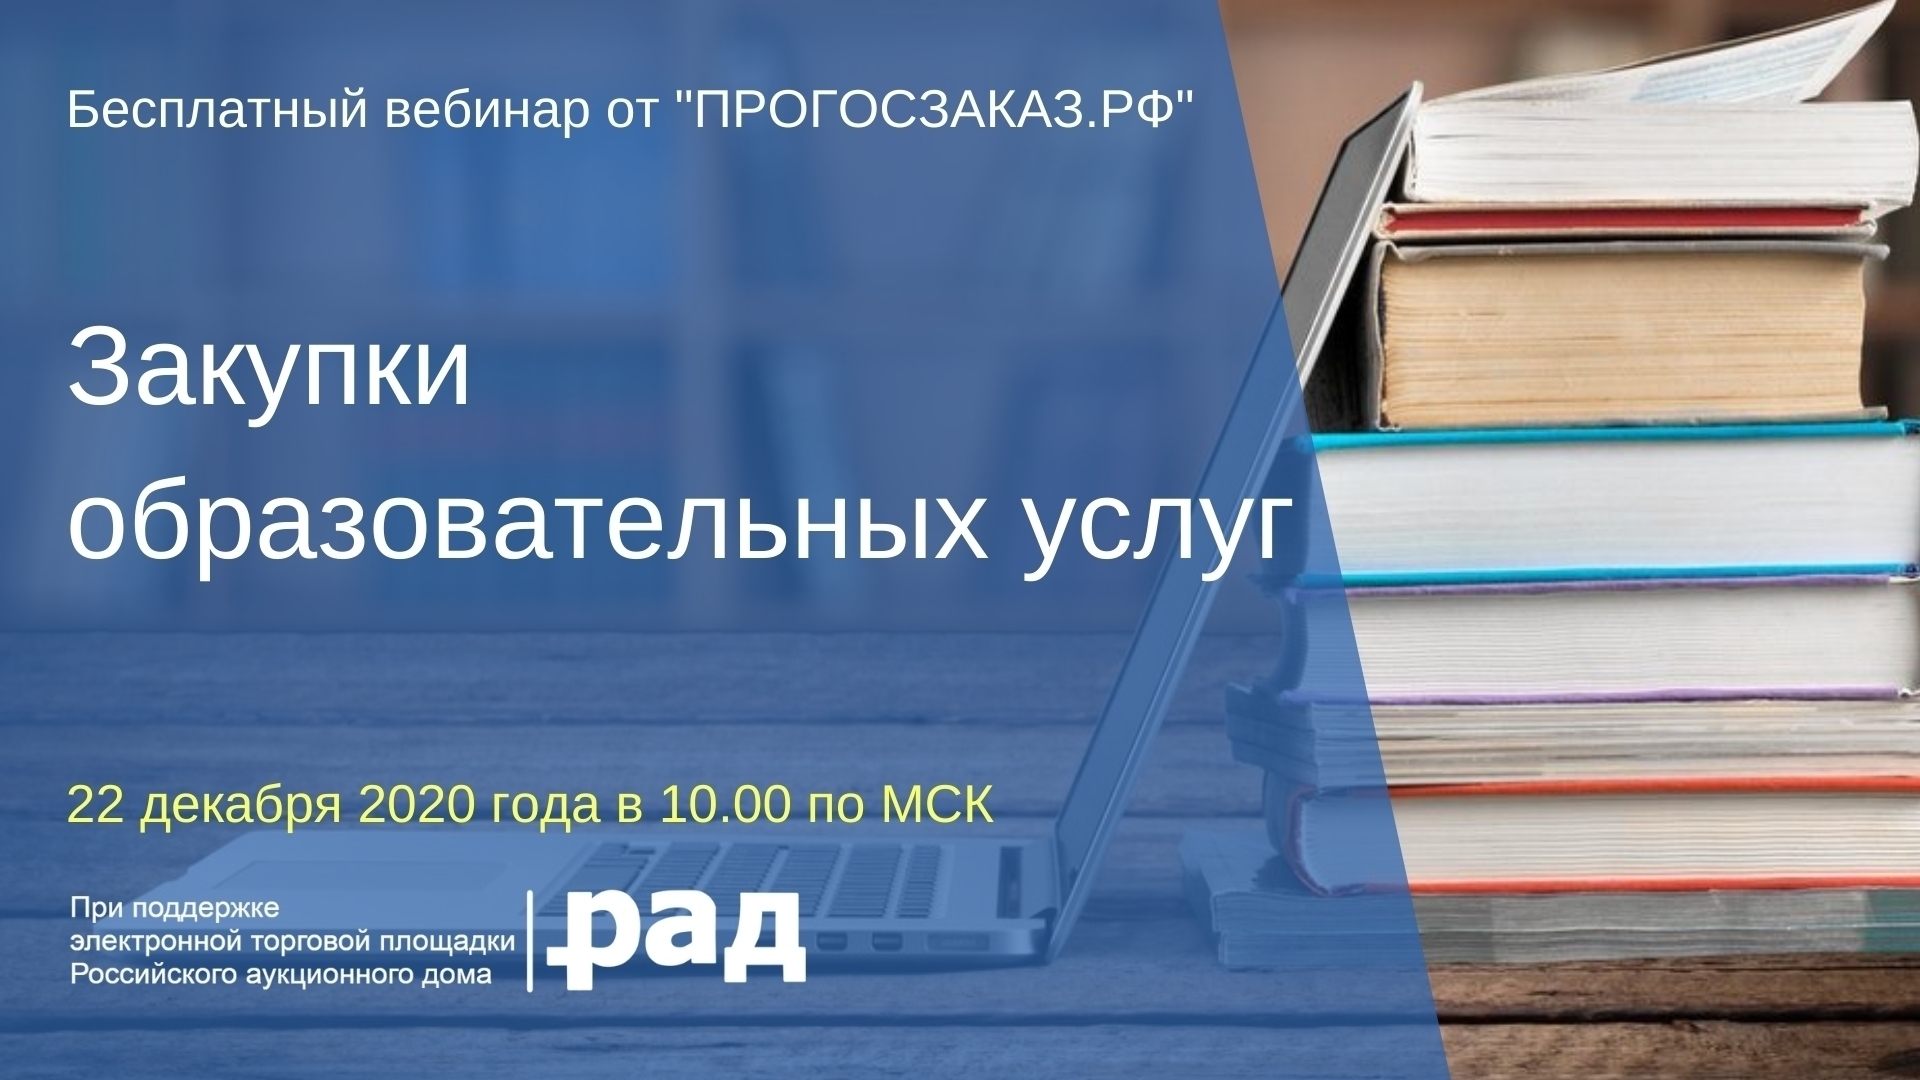 22 декабря 2020 года в 10:00 по МСК состоится вебинар на тему «Закупки образовательных услуг»